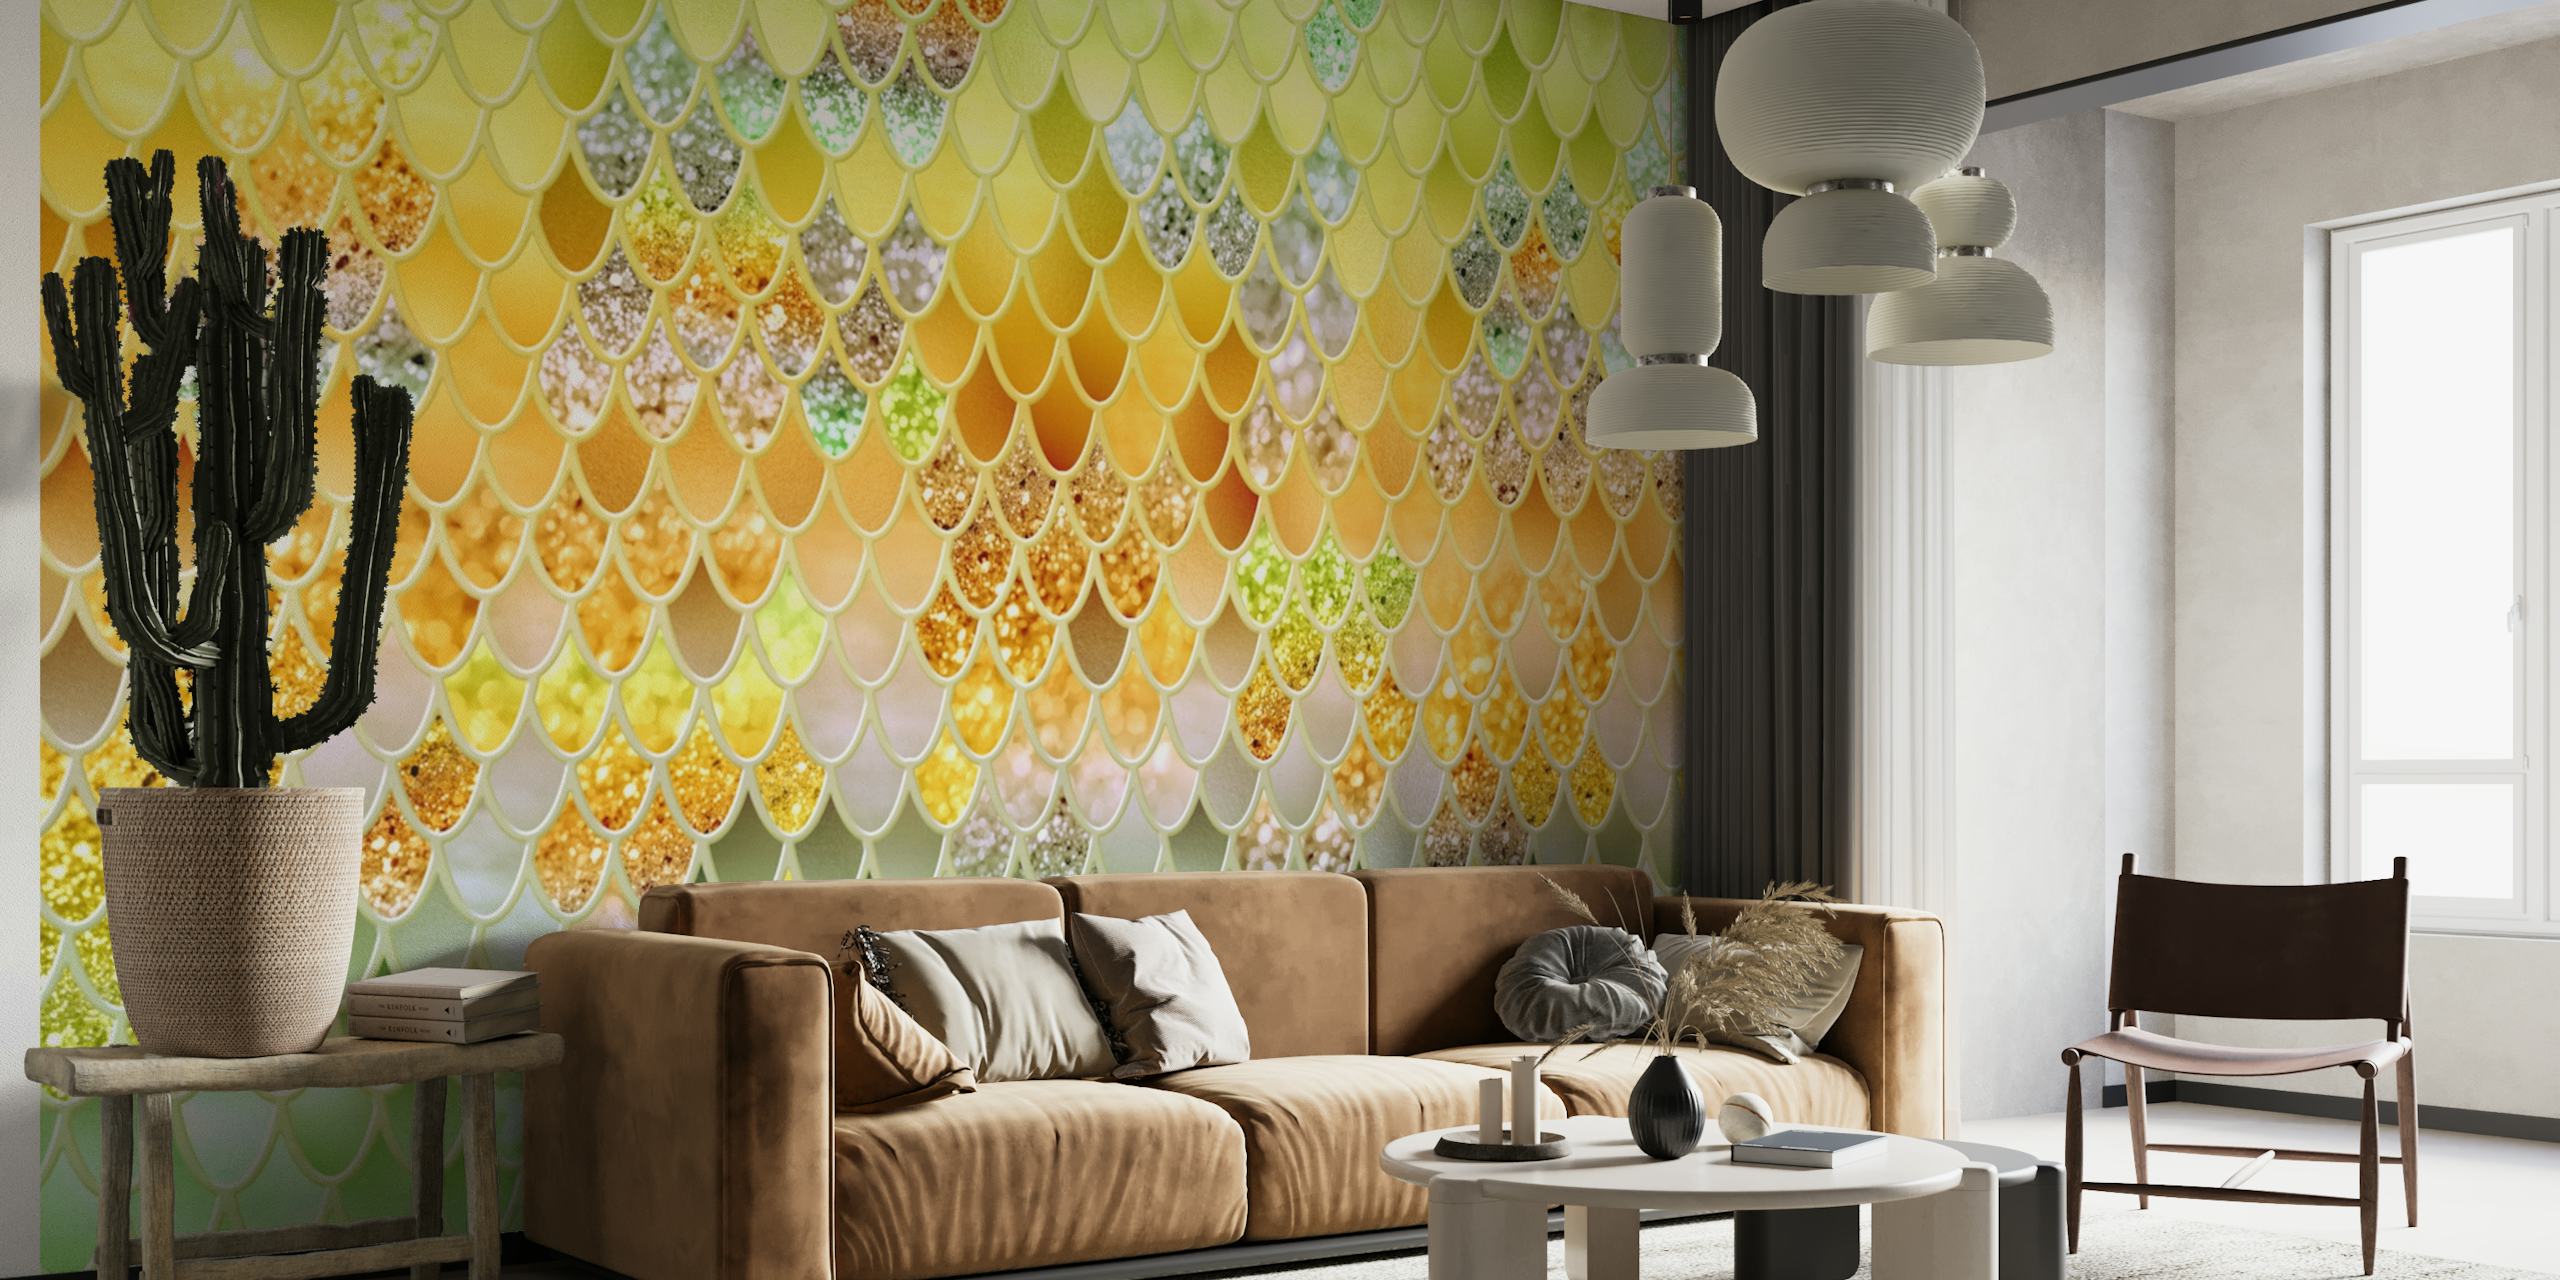 Fotomural vinílico de parede padrão de escamas de sereia com efeito de brilho pastel